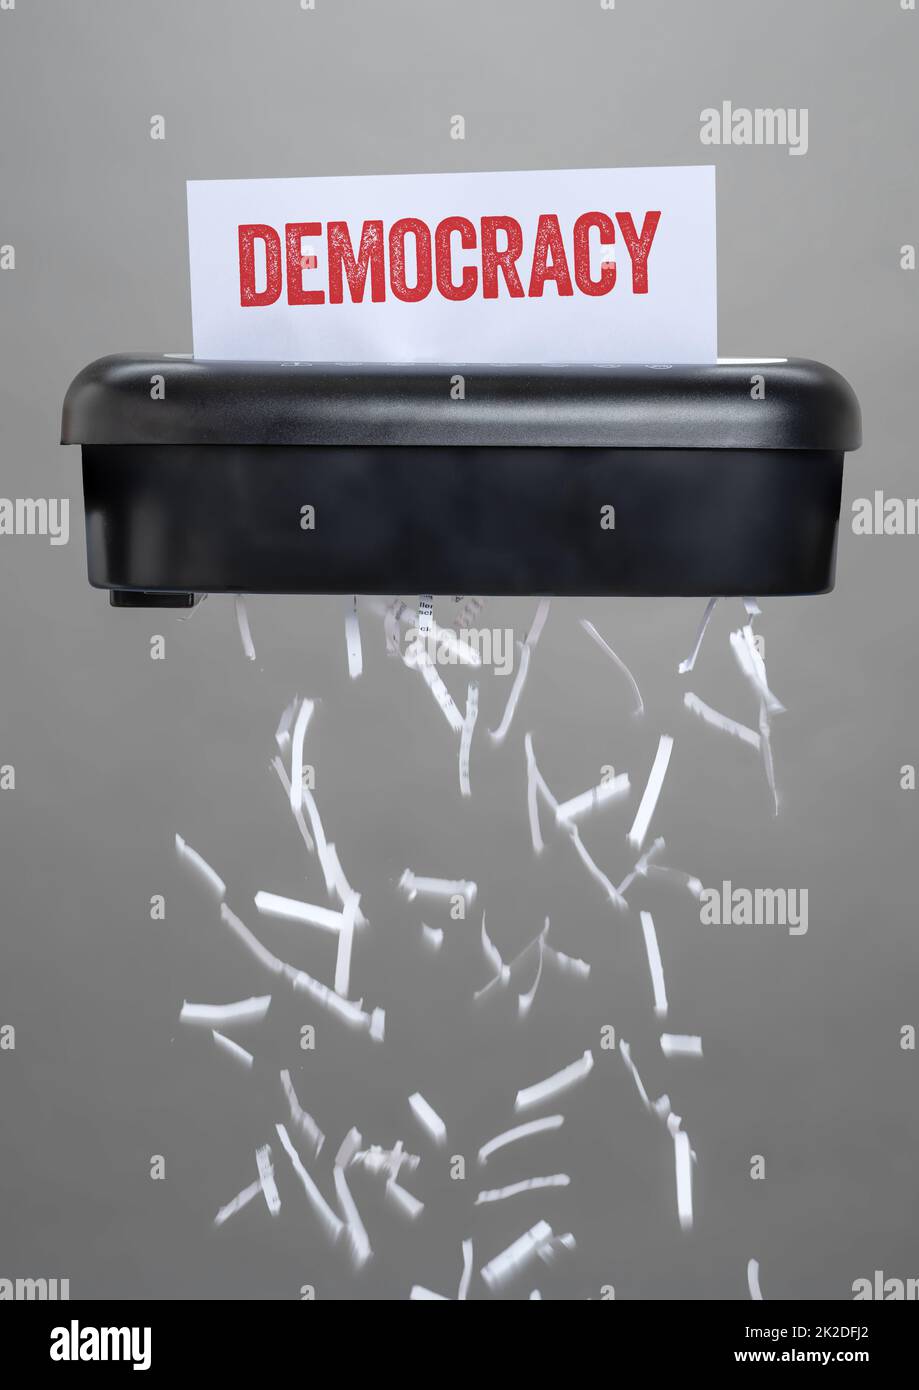 Un destructeur de documents - démocratie Banque D'Images